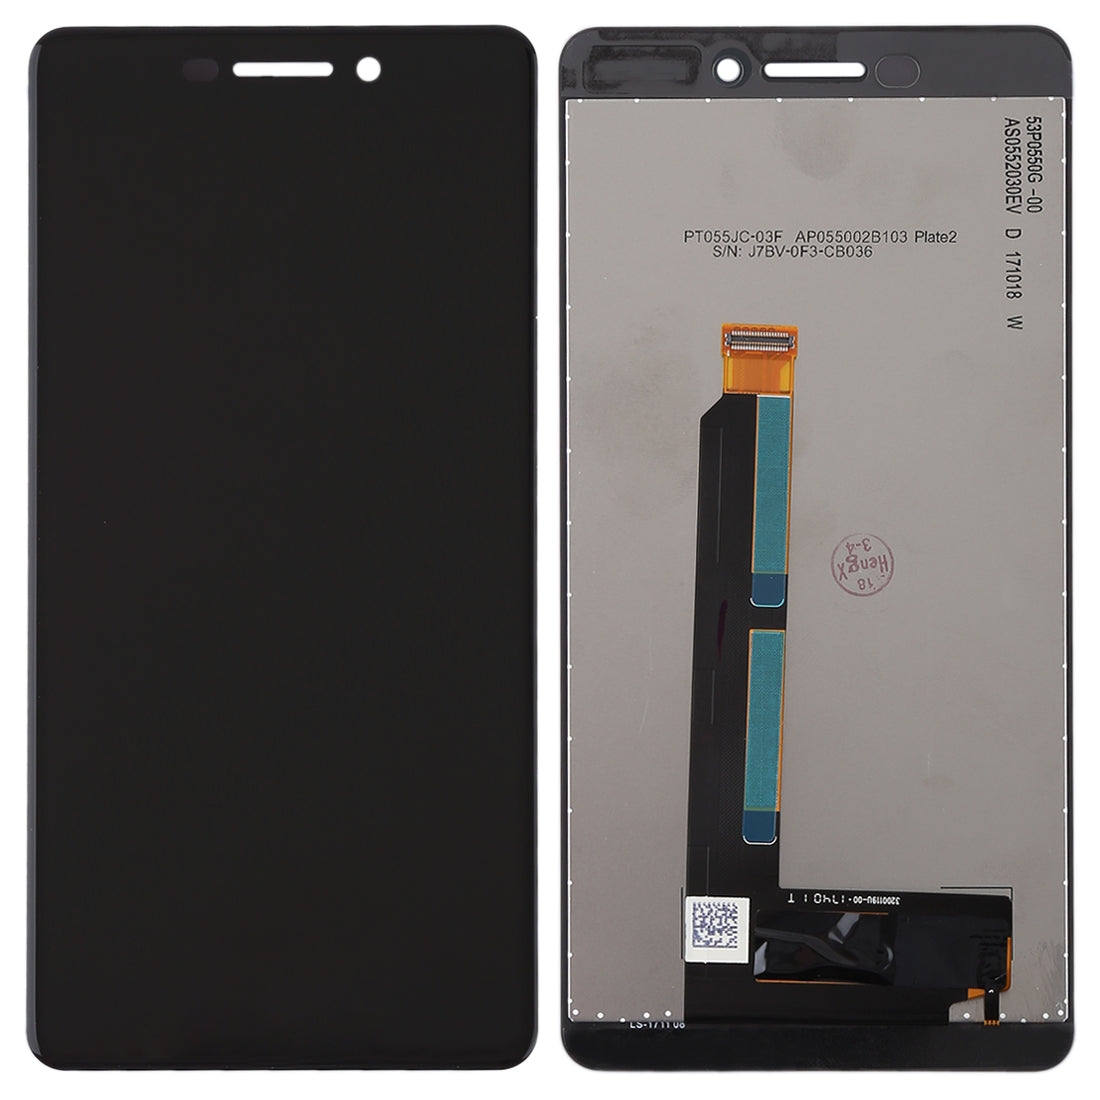 Pantalla LCD + Tactil Nokia 6 2018 6.1 SCTA-1043 TA-1045 TA-1050 TA-1054 Negro